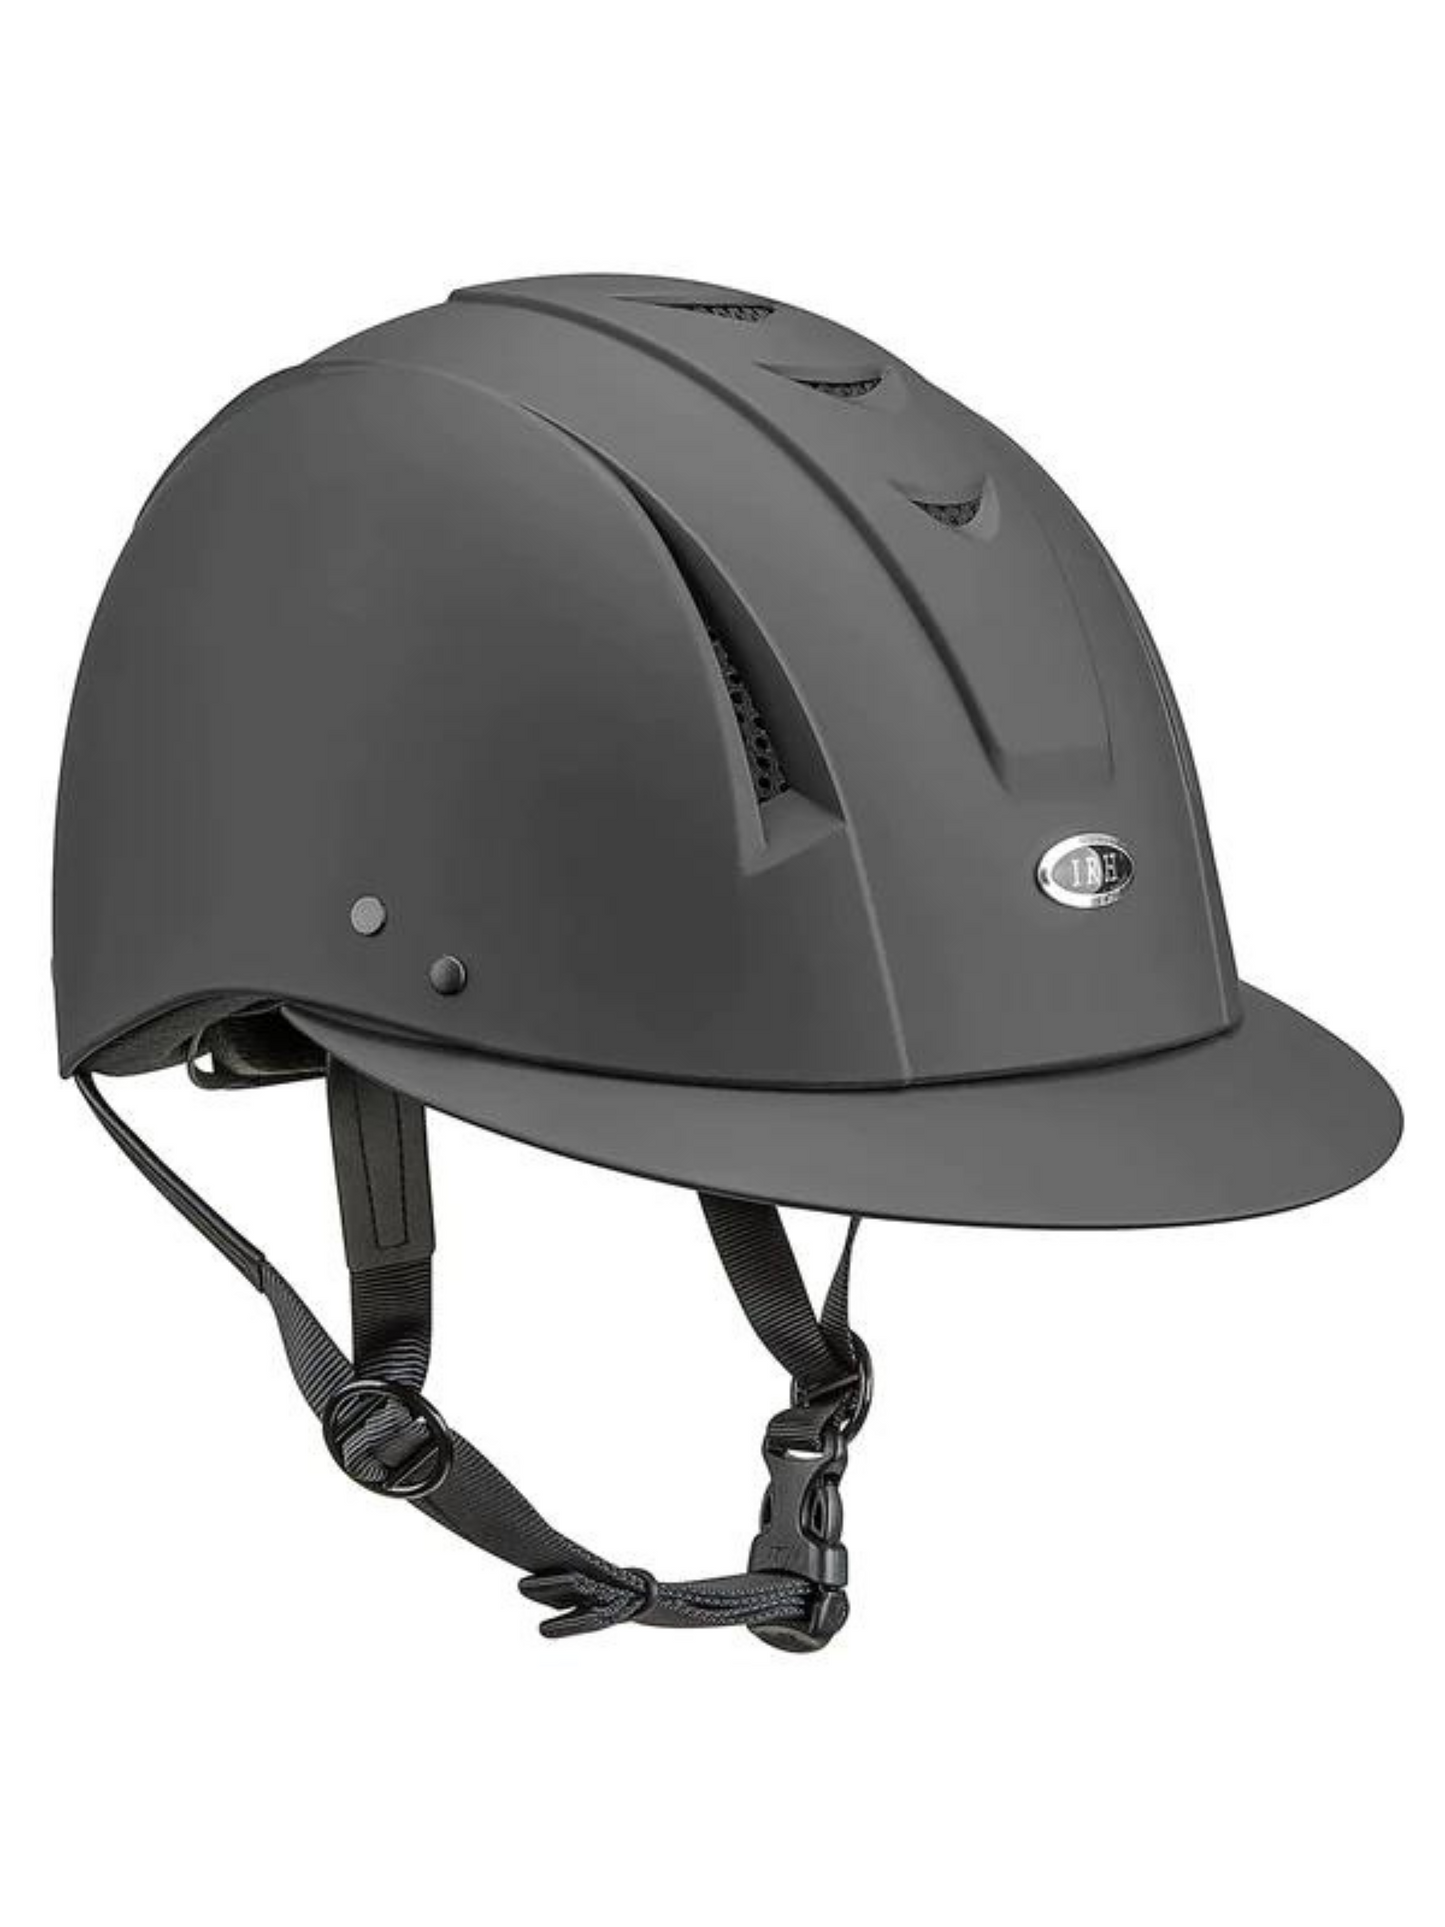 IRH Equi-Pro SV Deluxe Schooling Helmet (Matte Black)